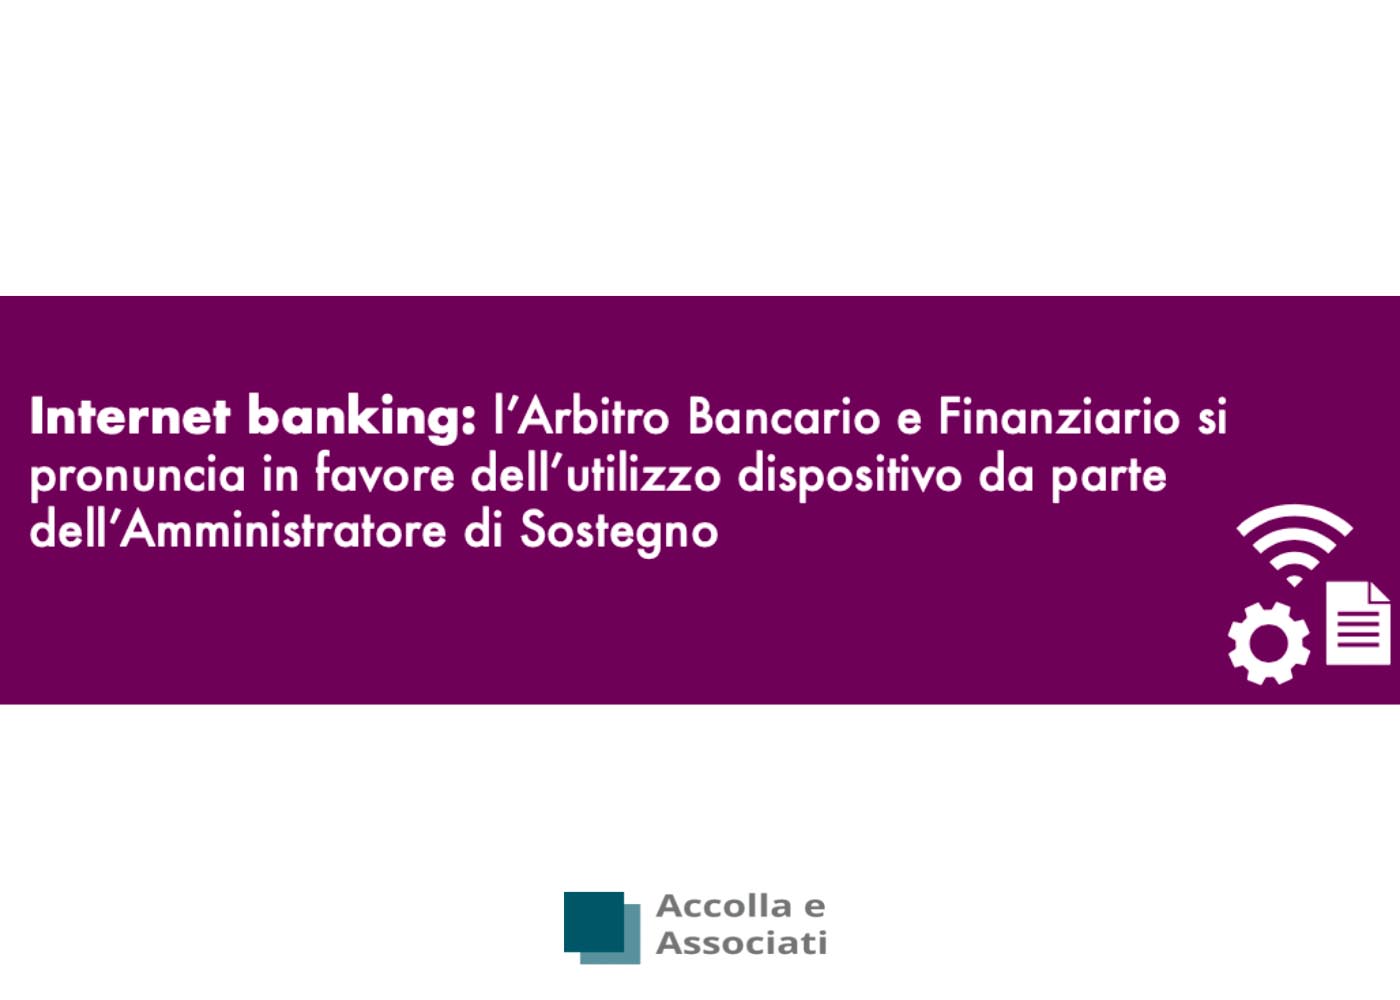 Internet banking: l’Arbitro Bancario e Finanziario si pronuncia in favore dell’utilizzo dispositivo da parte dell’Amministratore di Sostegno